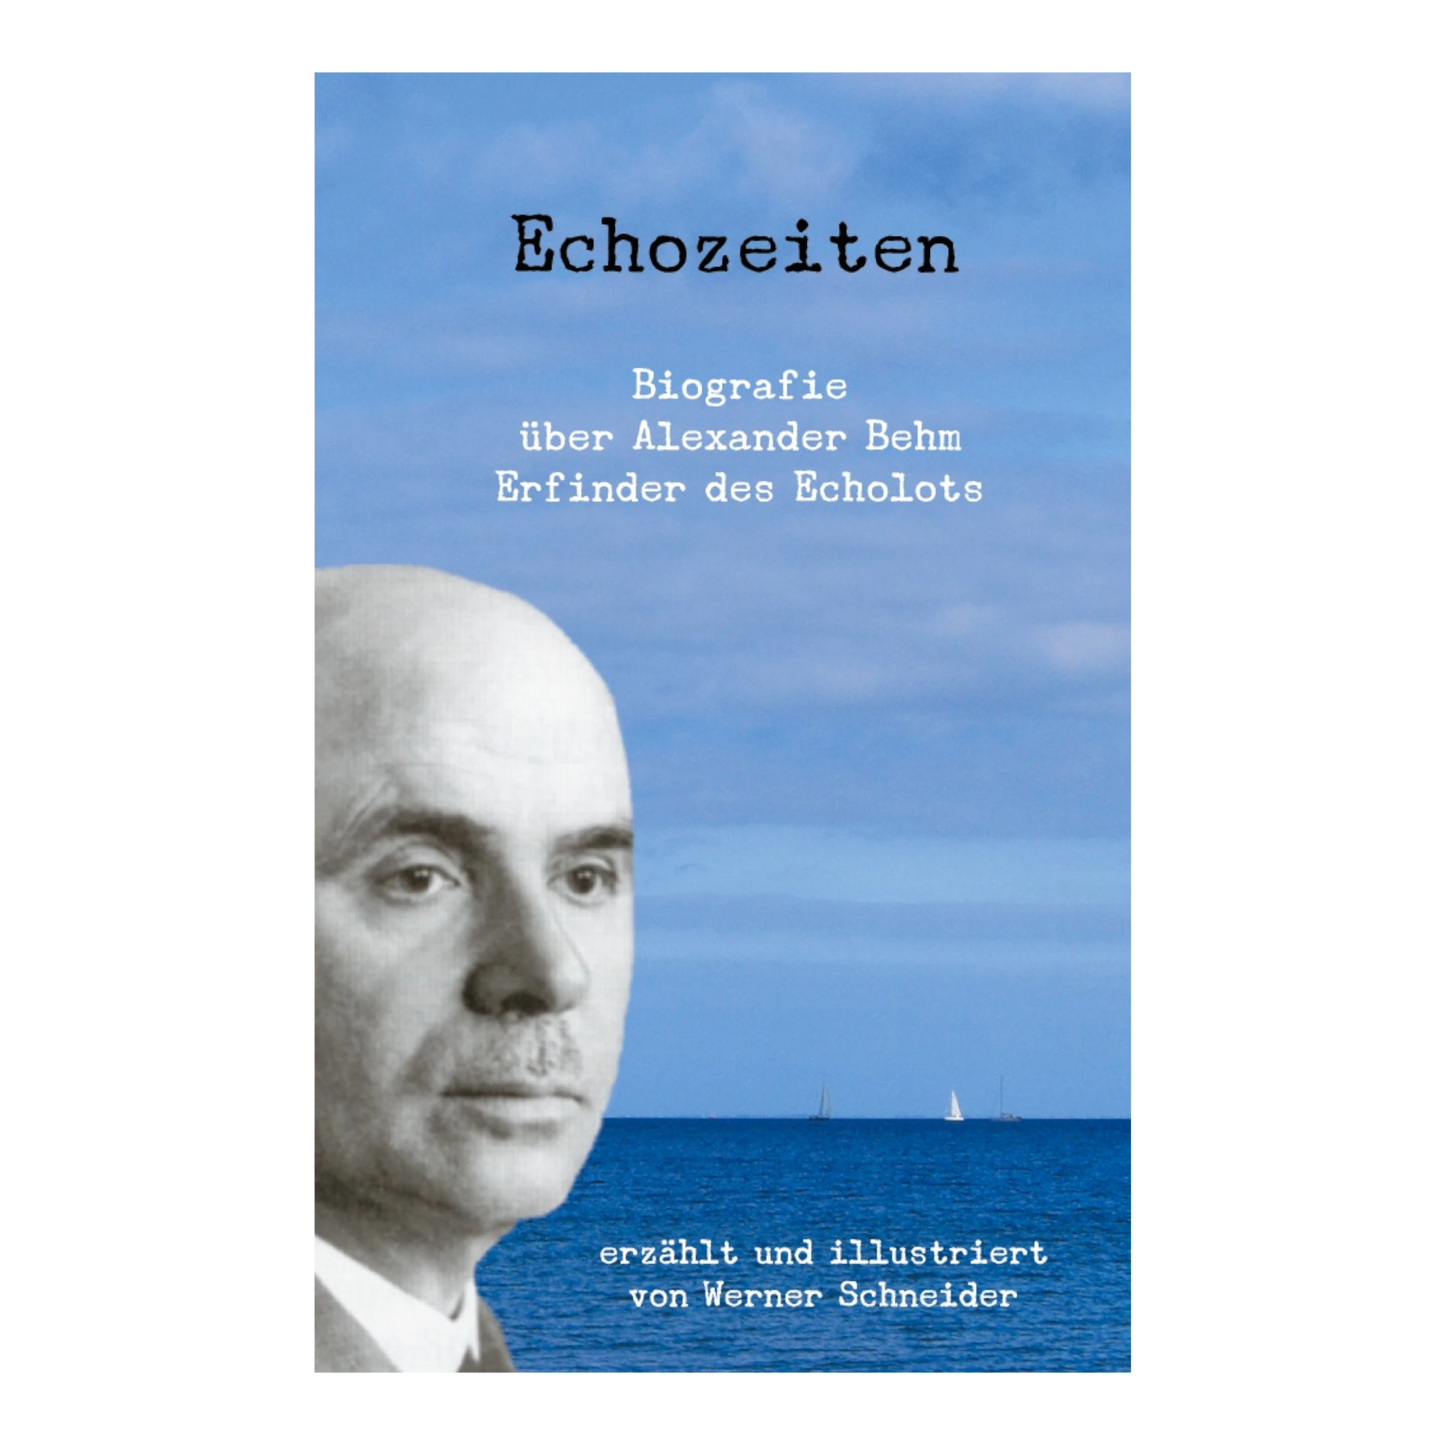 BOD Echozeiten - Biografie über Alexander Behm, den Erfinder des Echolots (Werner Schneider)